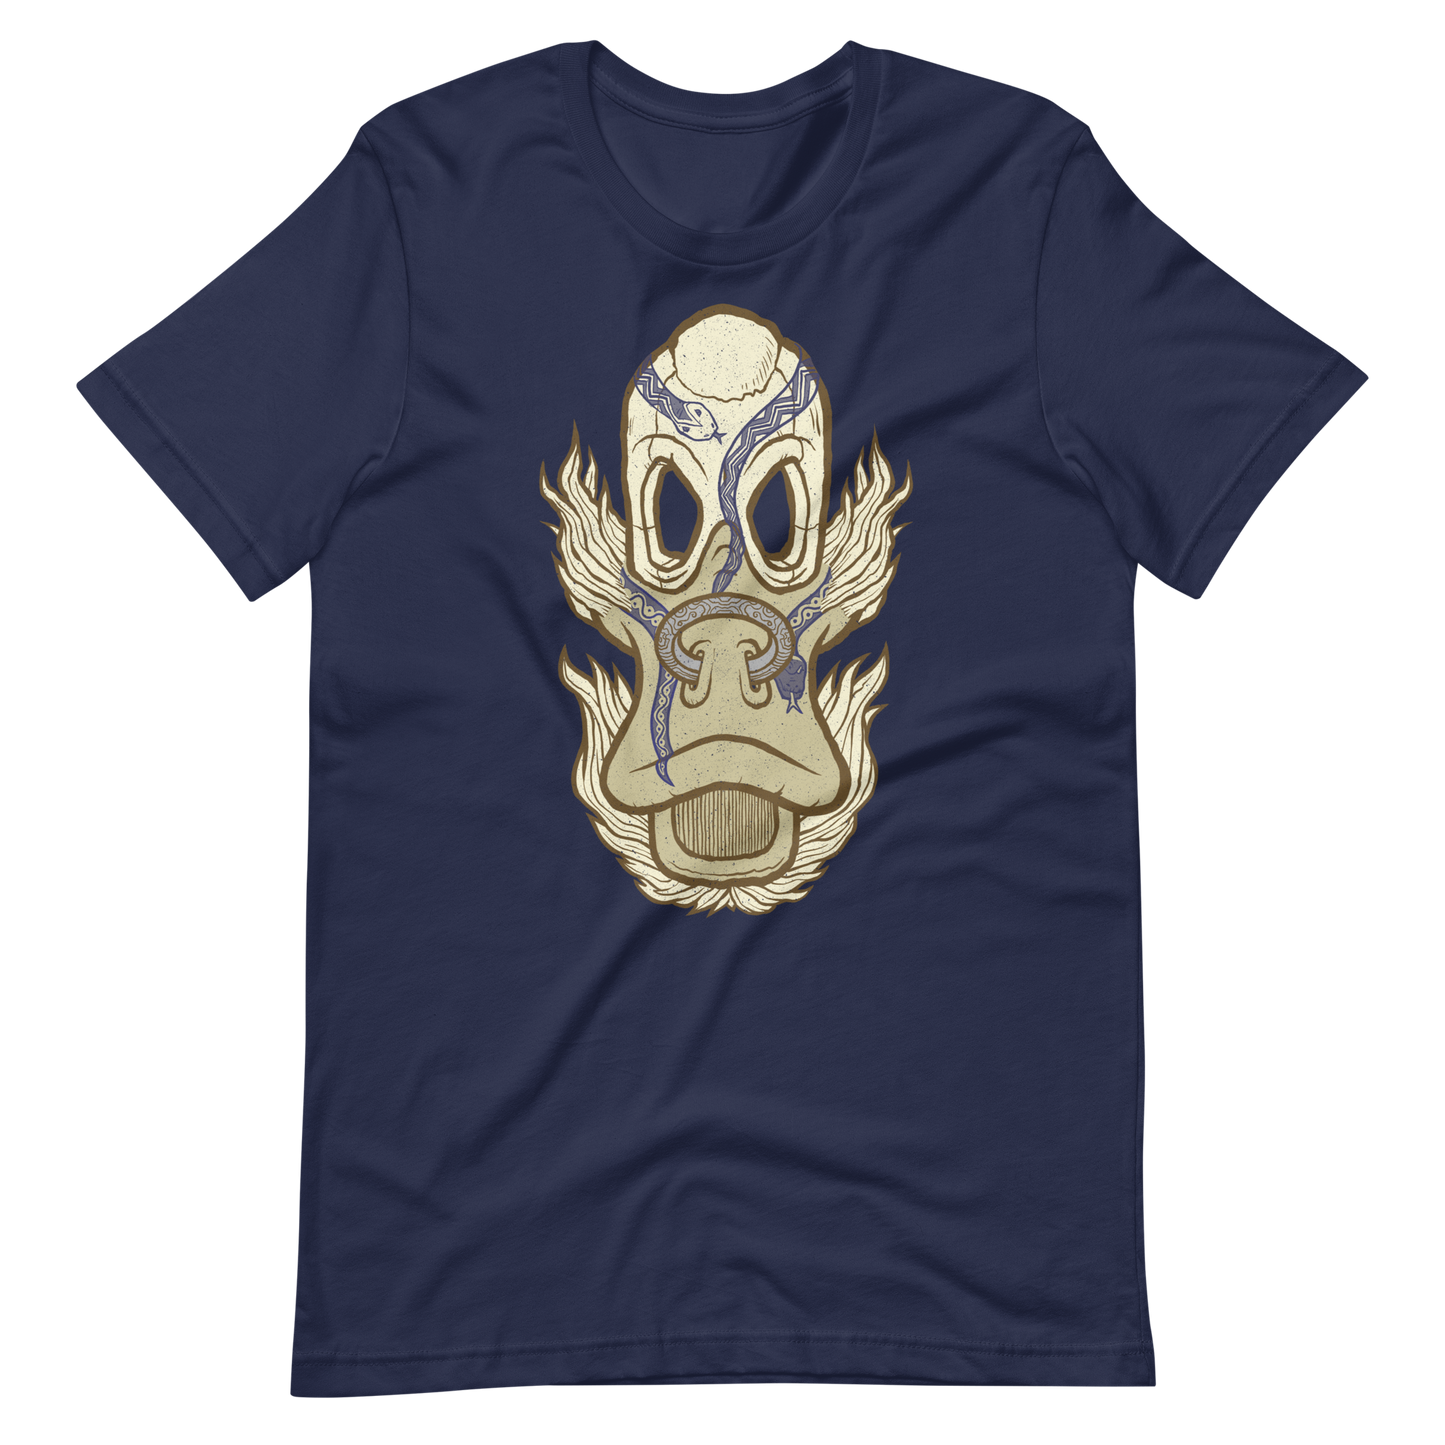 No 005 Wierd Duck Skull collection t-shirt